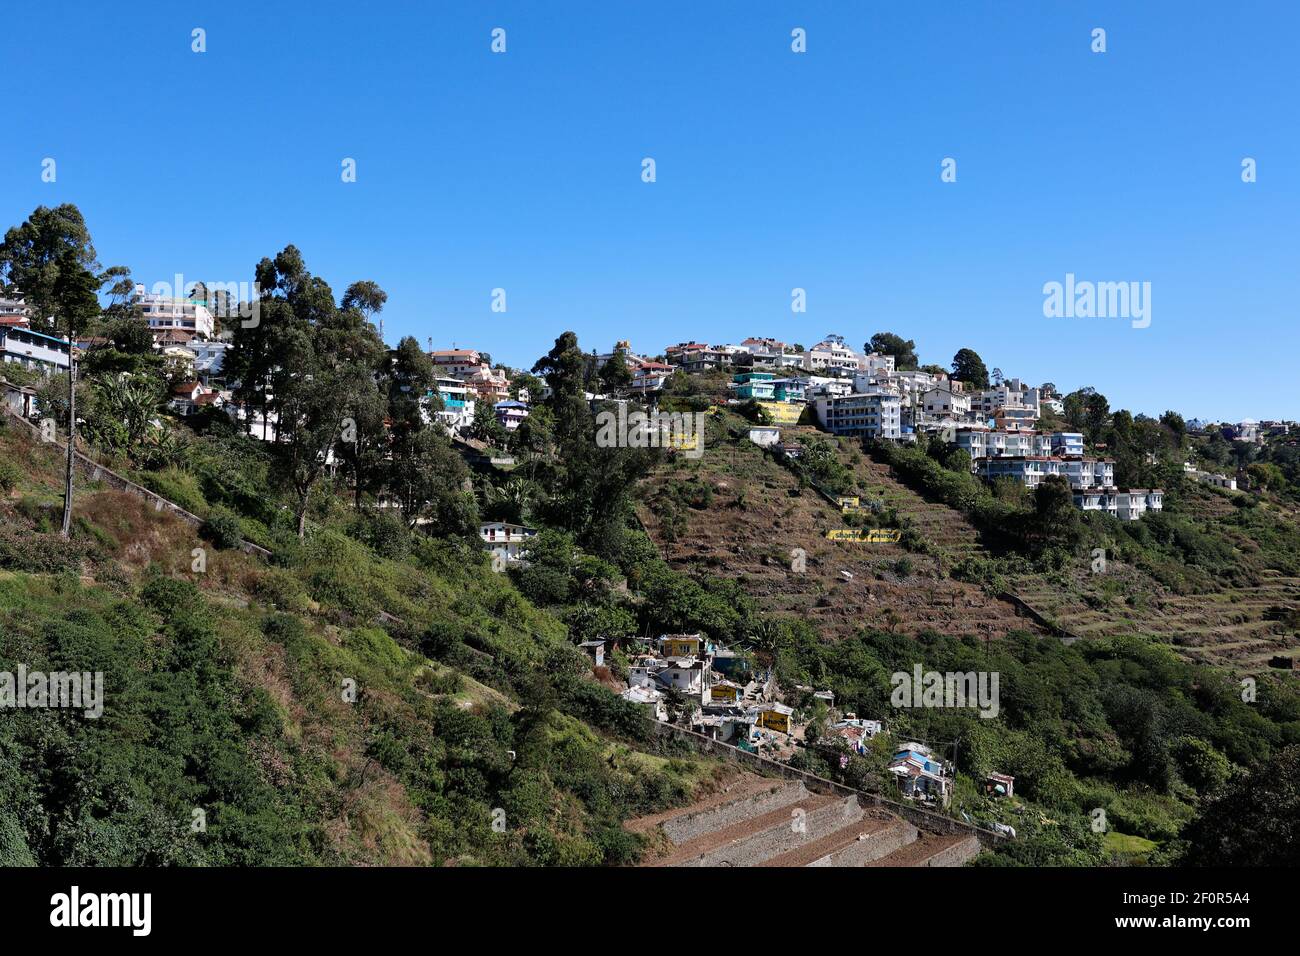 Vista de las casas construidas en las laderas de la montaña en la estación de la colina de Kodaikanal en Dindigul, Tamil Nadu, India Foto de stock